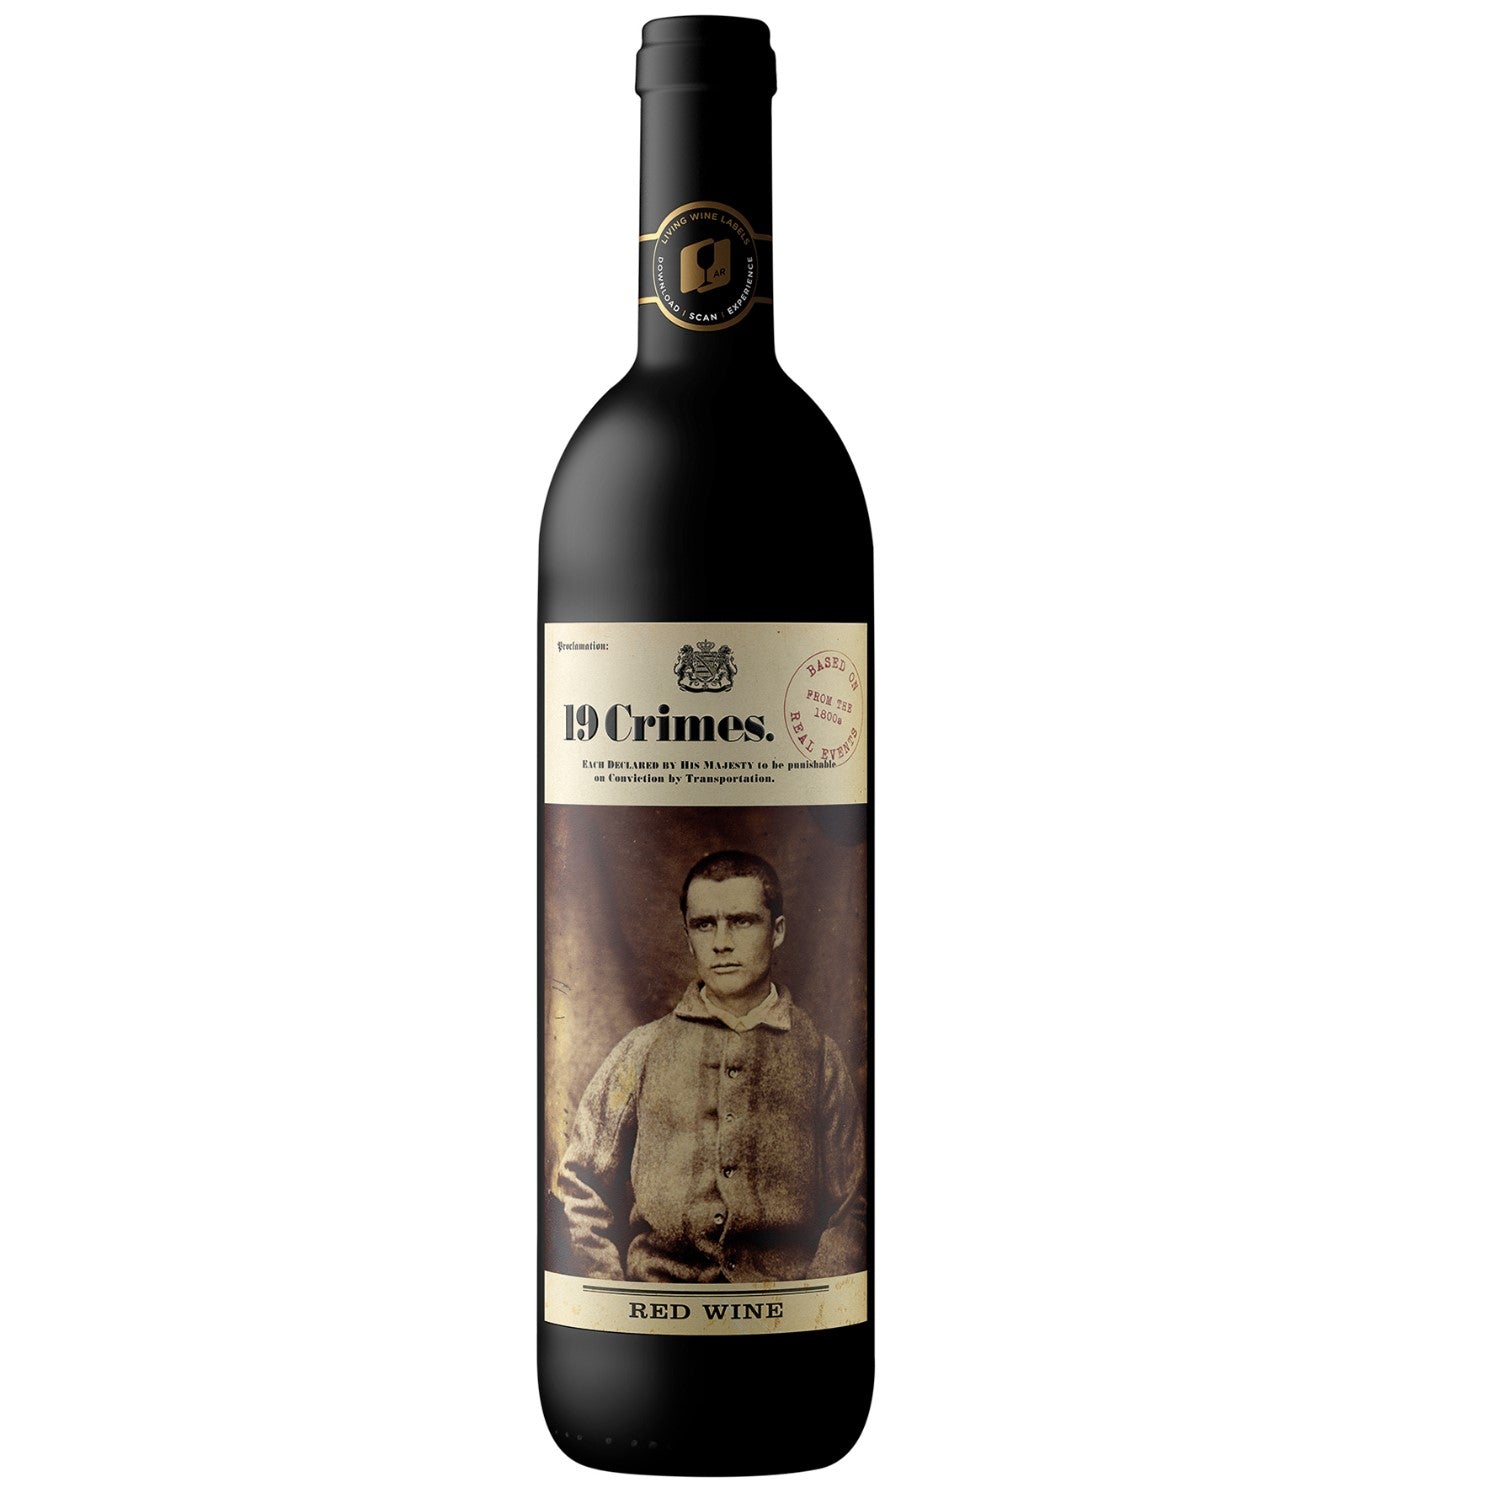 19 Crimes Red Blend Cabernet Sauvignon Merlot Shiraz Rotwein Wein Trocken Australien (12 x 0.75l) - Versanel - Wein